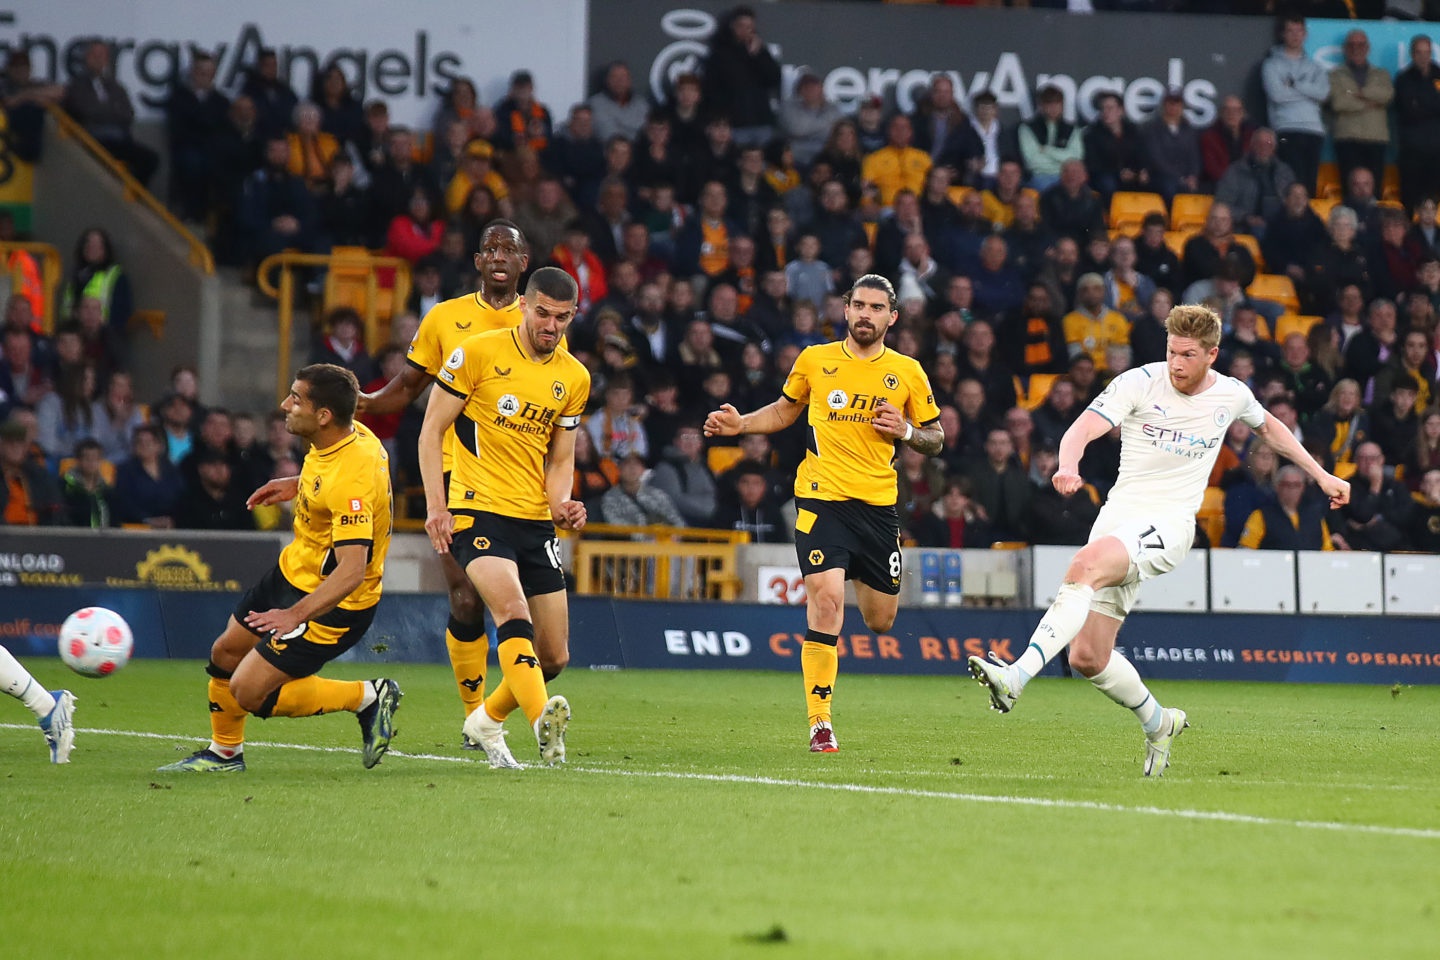 Trong 4 bàn thắng De Bruyne ghi vào lưới Wolves rạng sáng 12/5, có đến 3 bàn xuất phát từ chân trái không thuận của cầu thủ. Ảnh: Reuters.